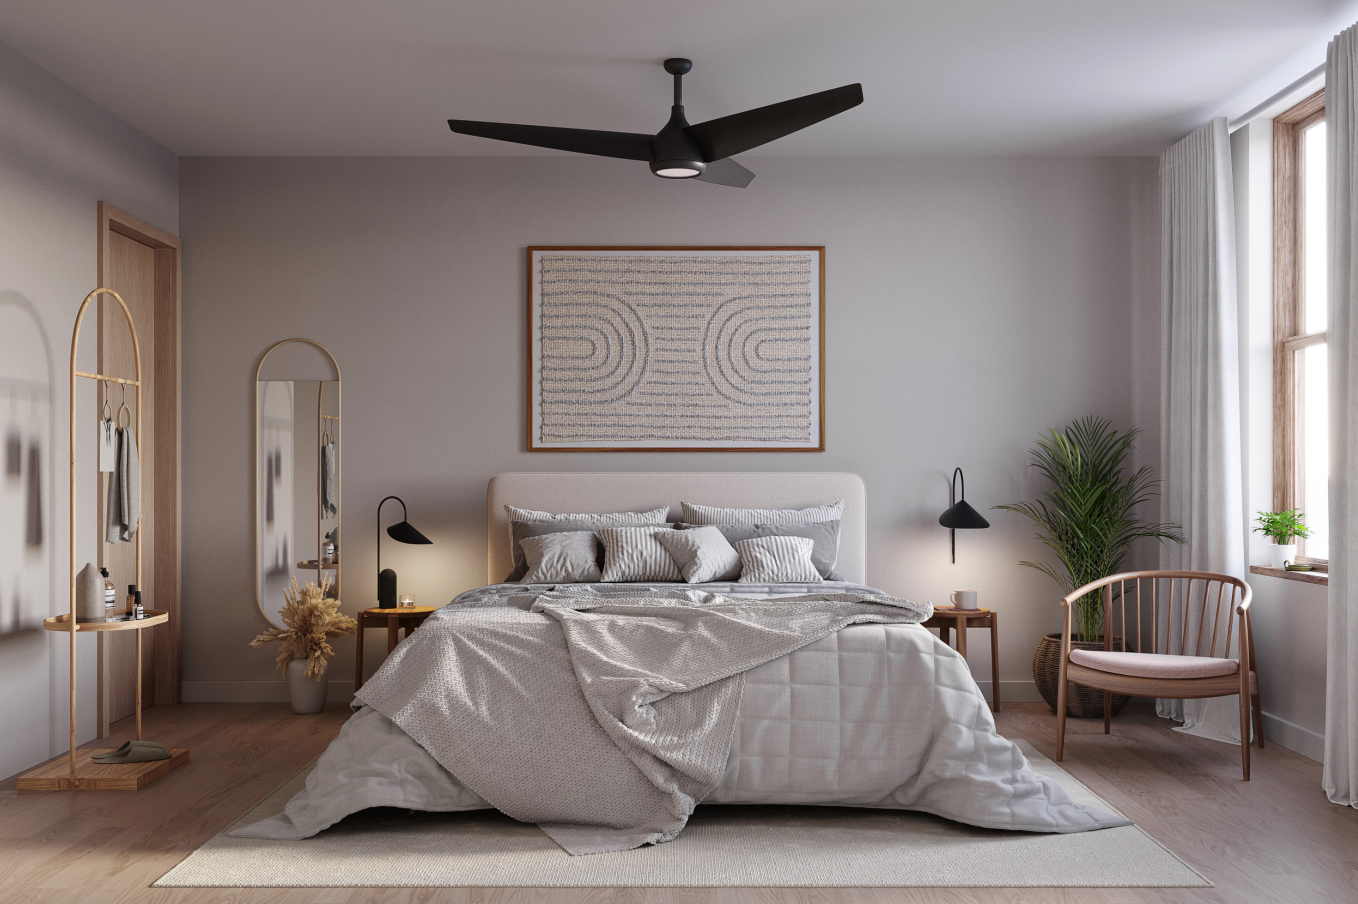 Bedroom with hardwood floors, sleek ceilings fan, beige walls, and single-hung windows.